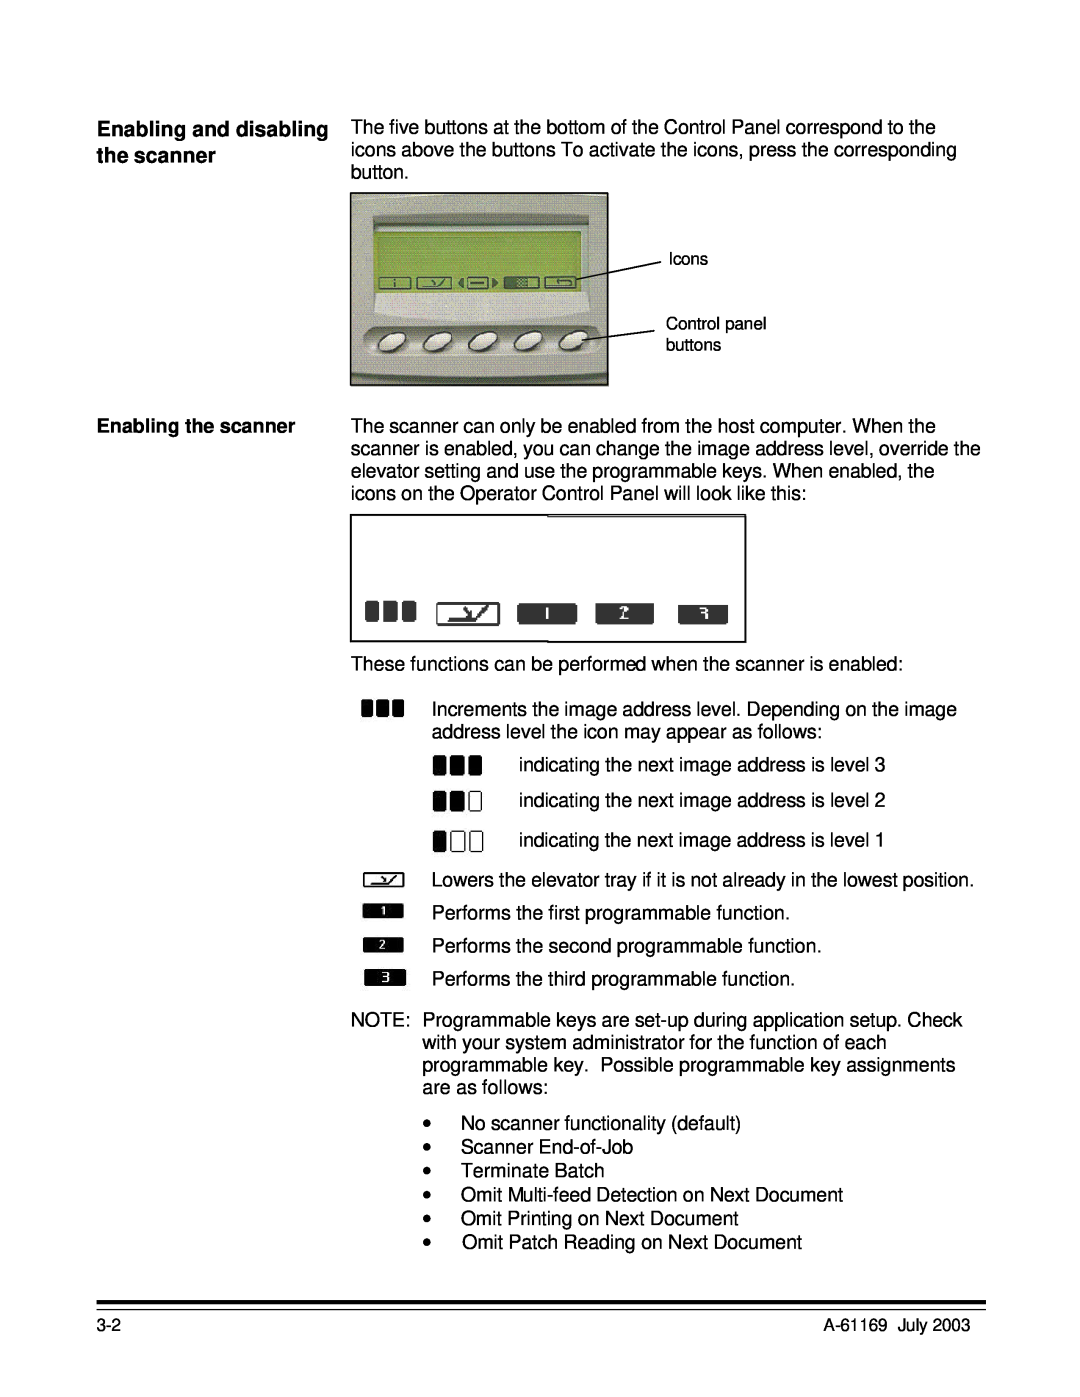 Kodak i800 Series manual Enabling and disabling, the scanner 